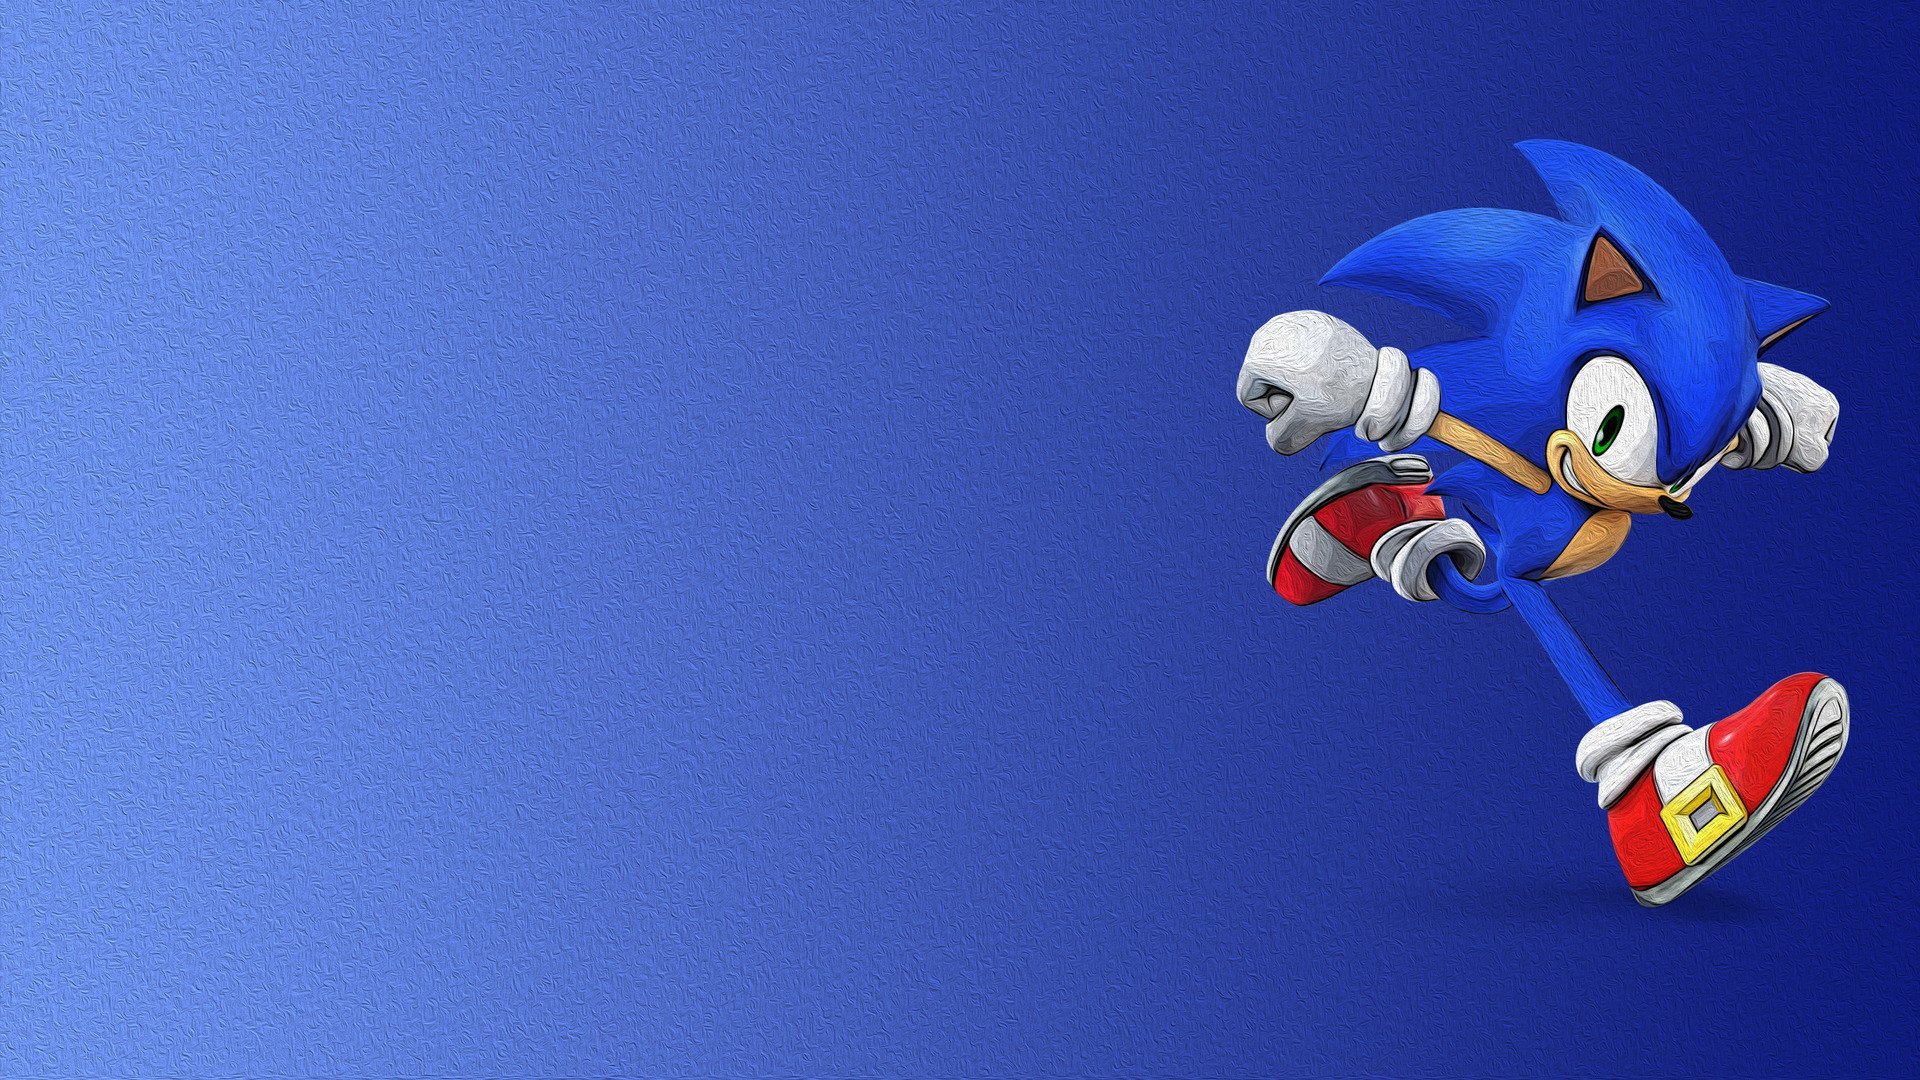 Sonic фон. Соник хеджхог. Фон Соника Sonic the Hedgehog.